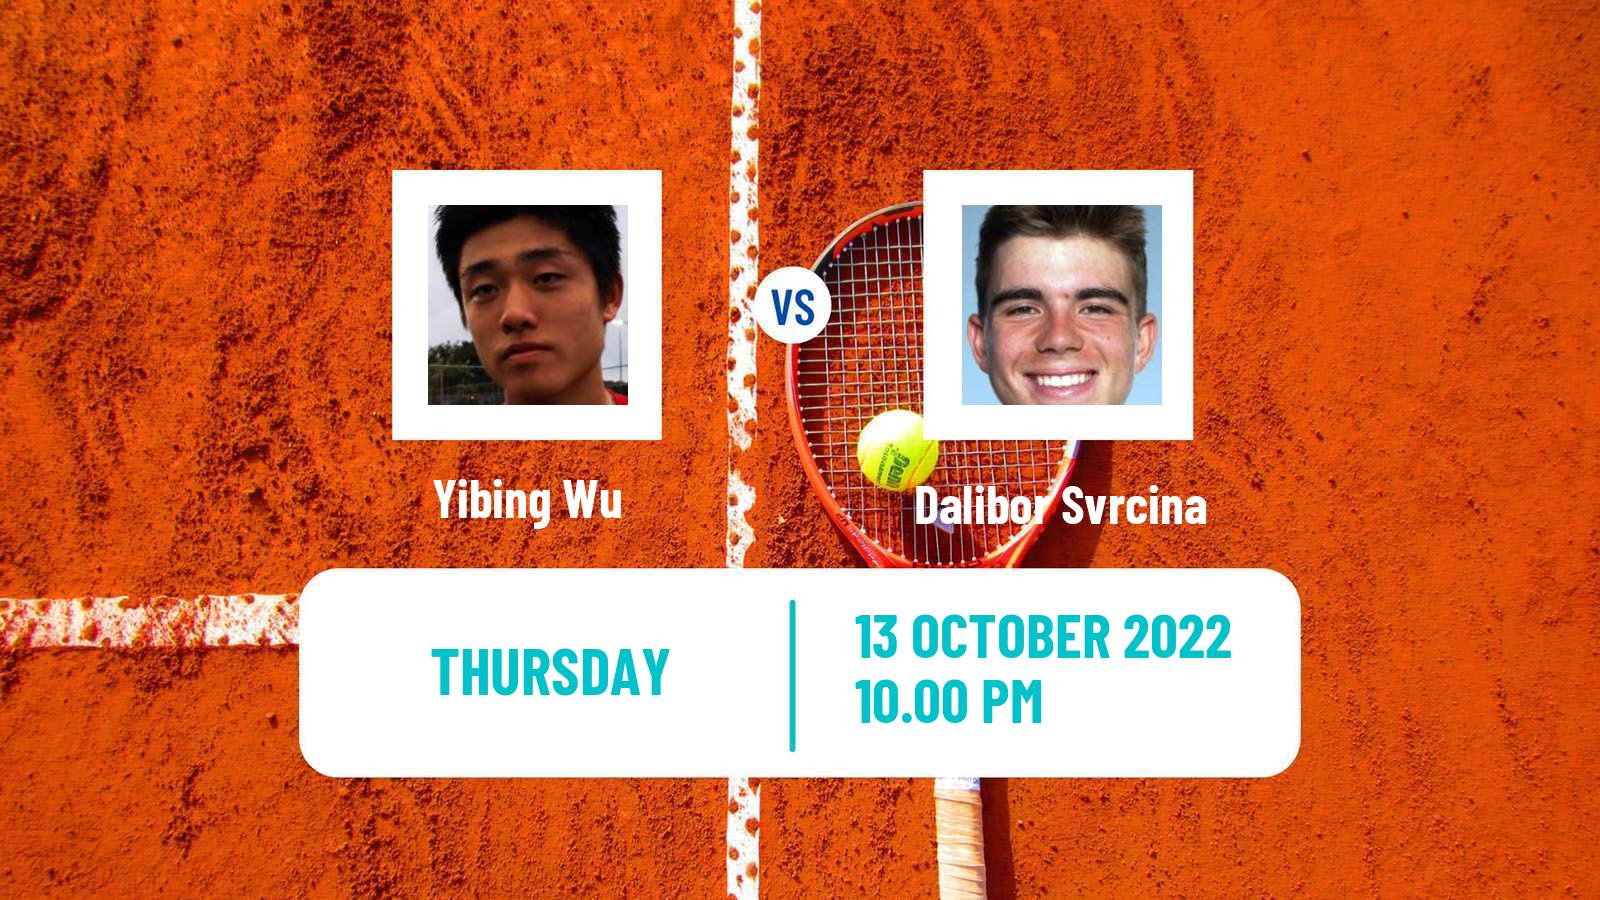 Tennis ATP Challenger Yibing Wu - Dalibor Svrcina